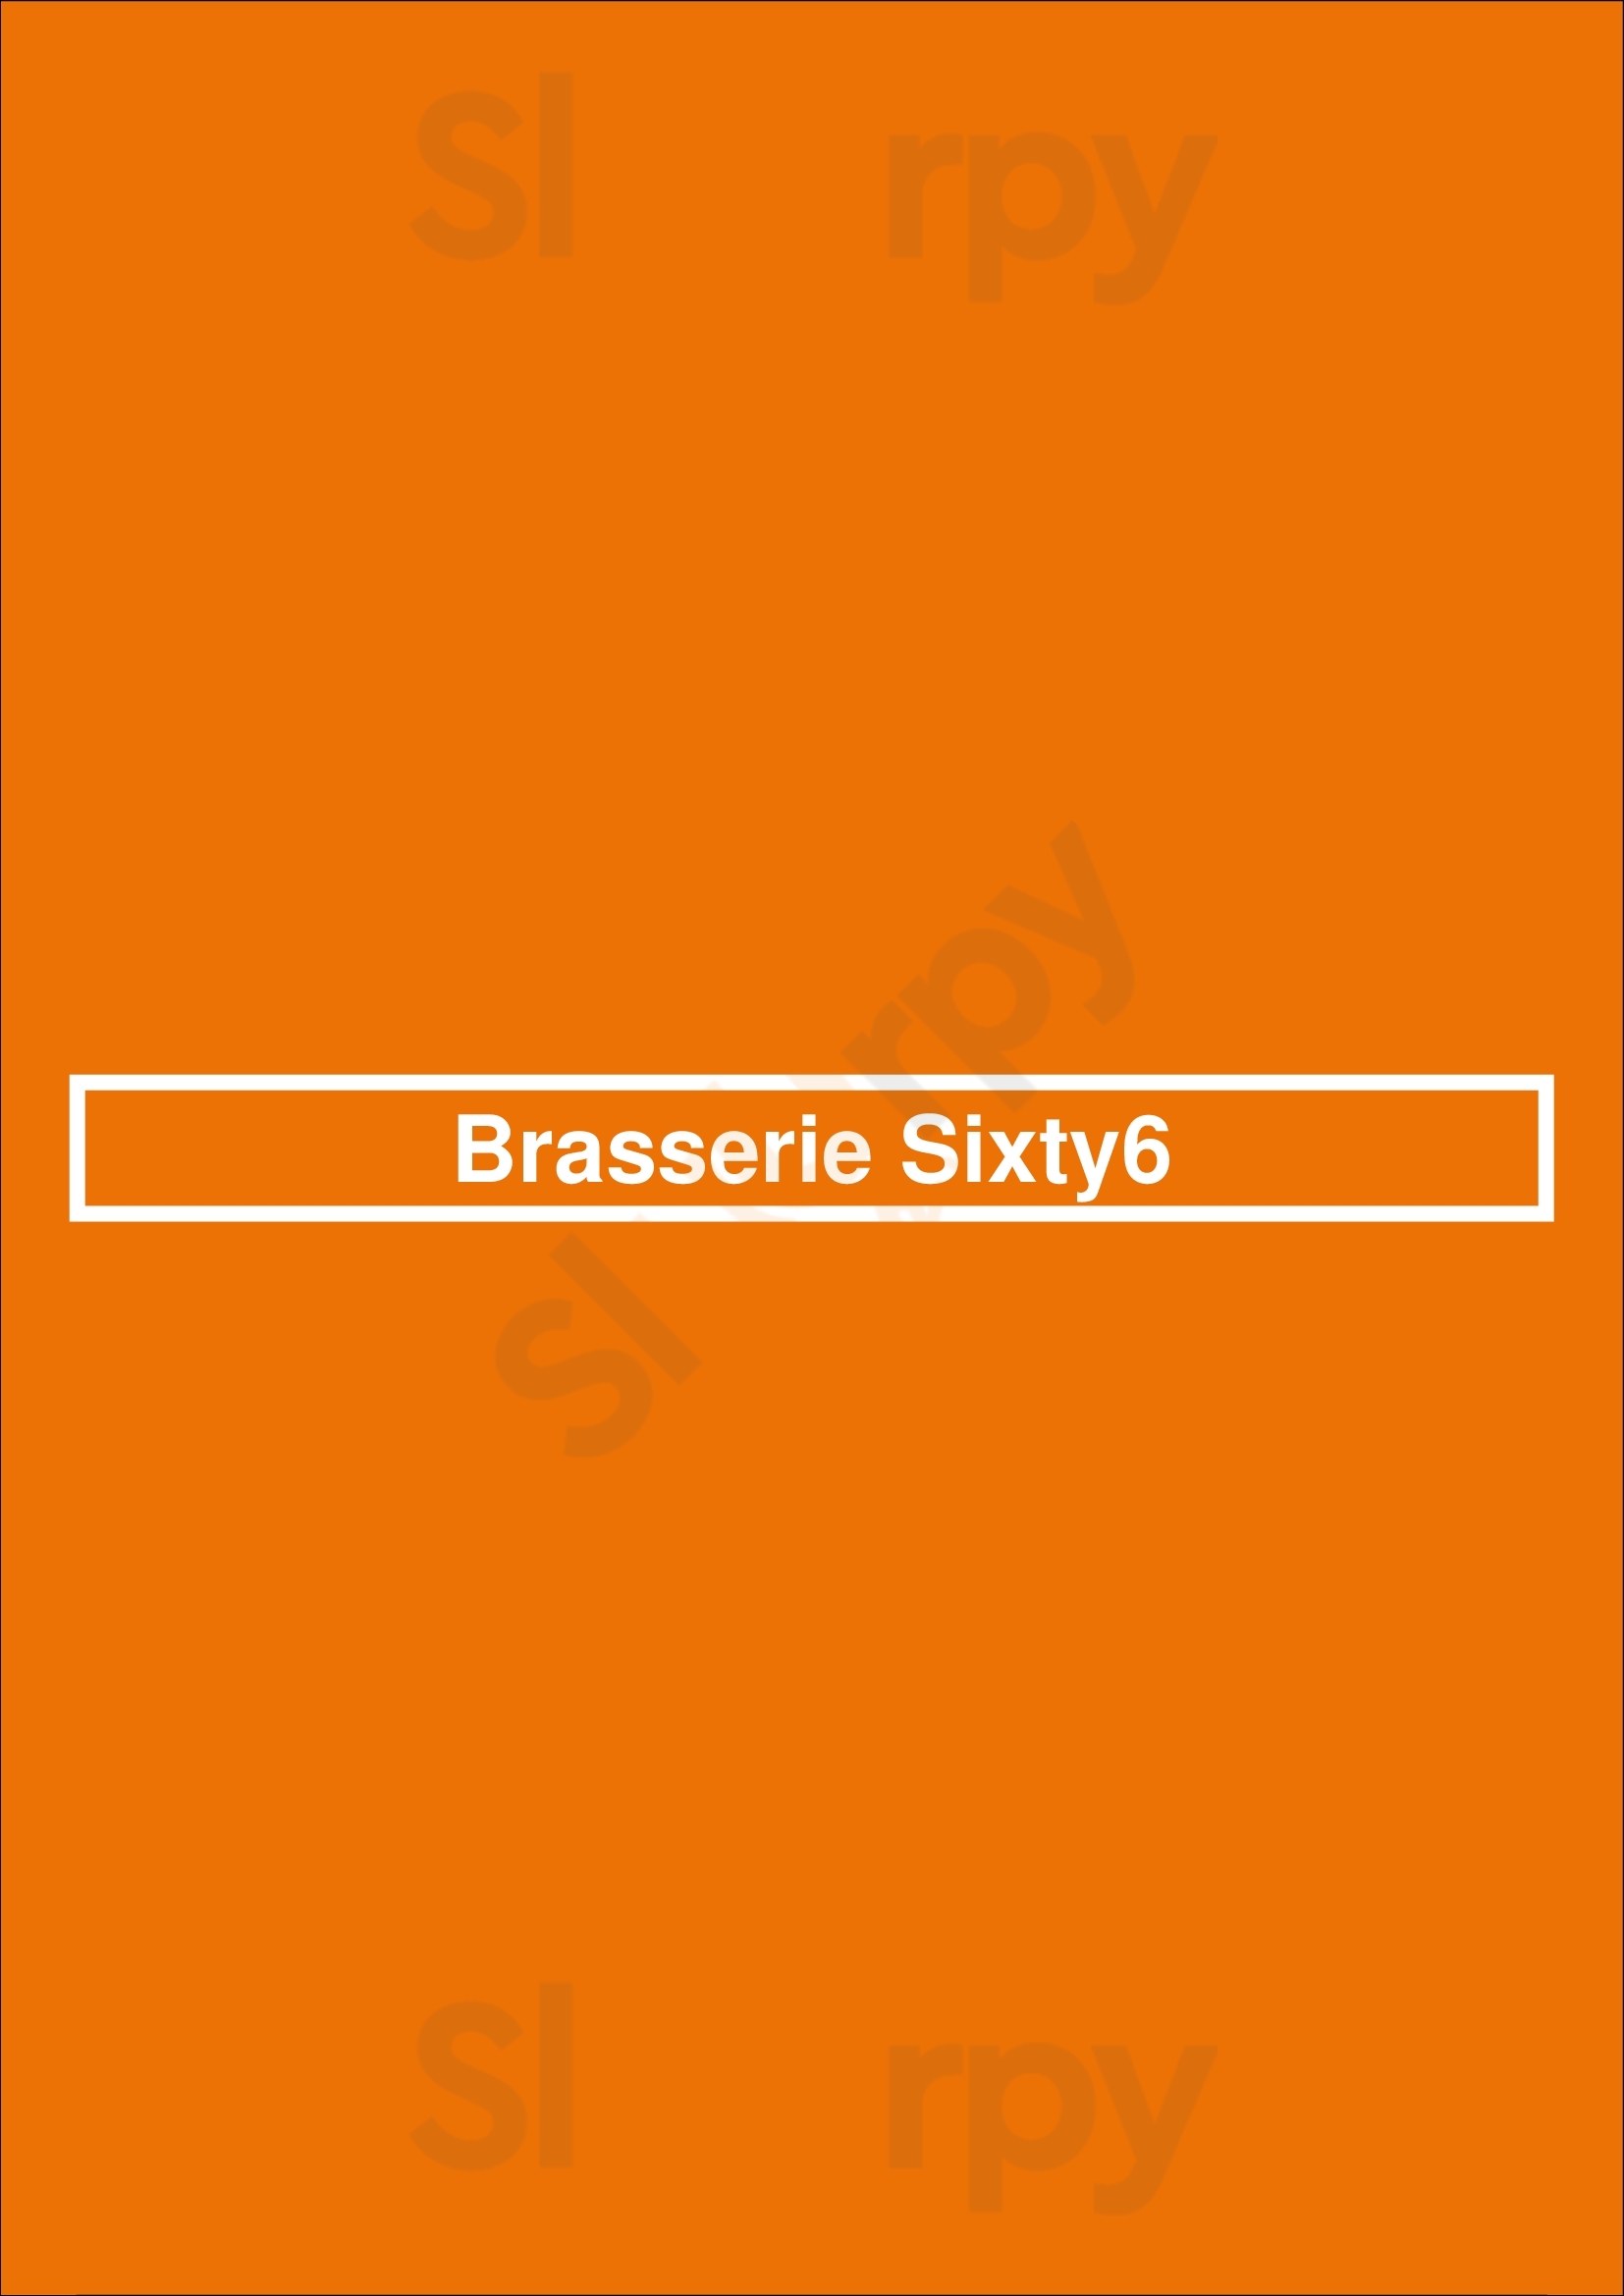 Brasserie Sixty6 Dublin Menu - 1